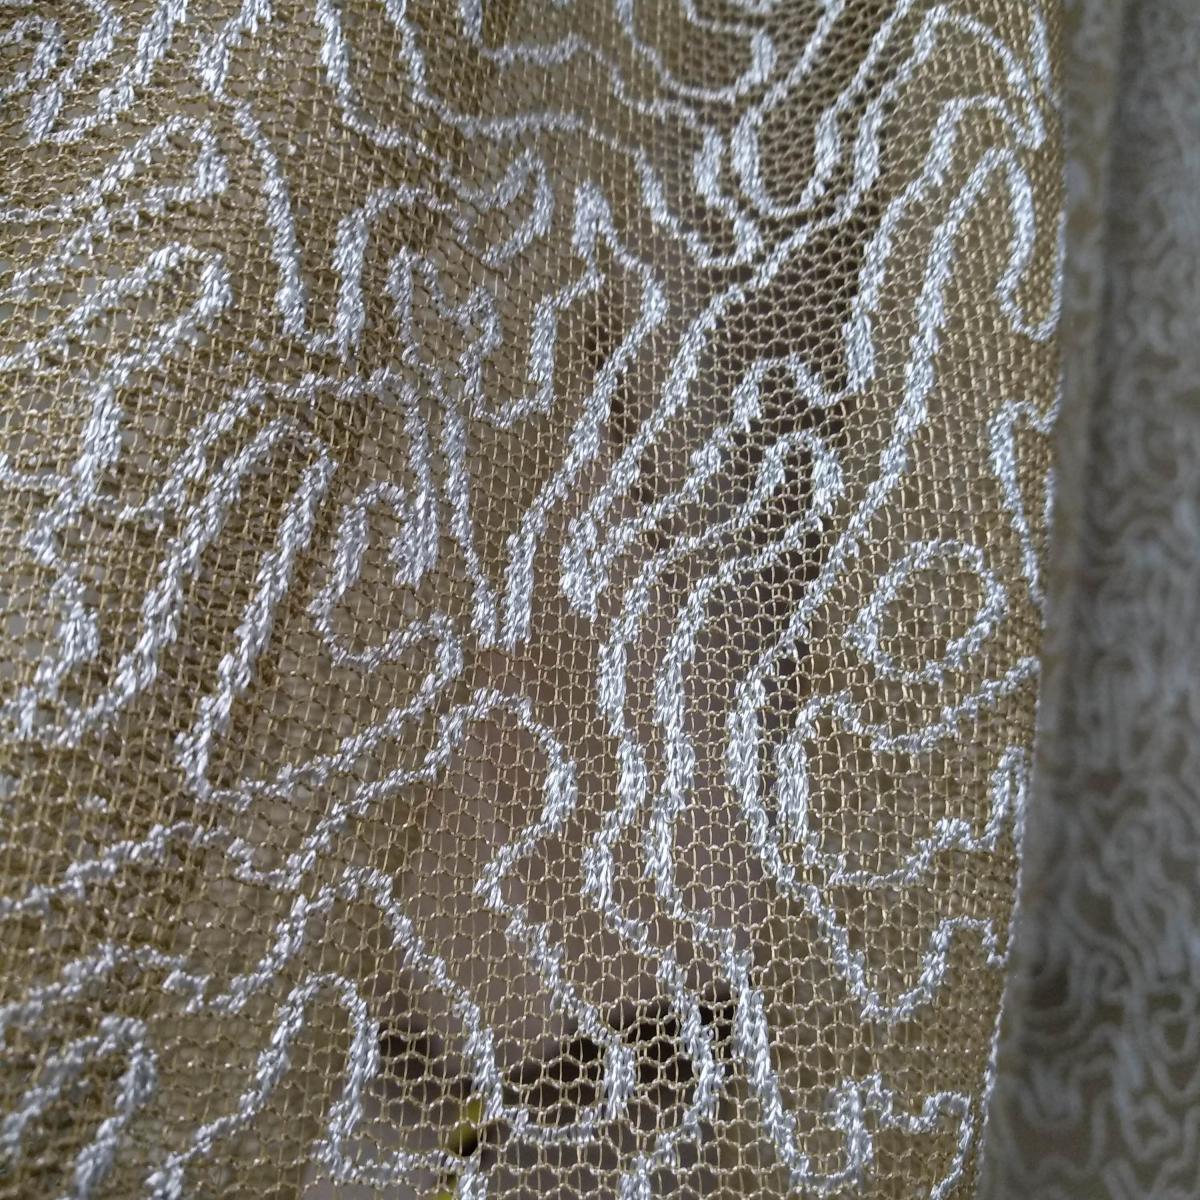 ТЮЛЬ на сетке венге   в сочетании с серебром  оригинальное плетение